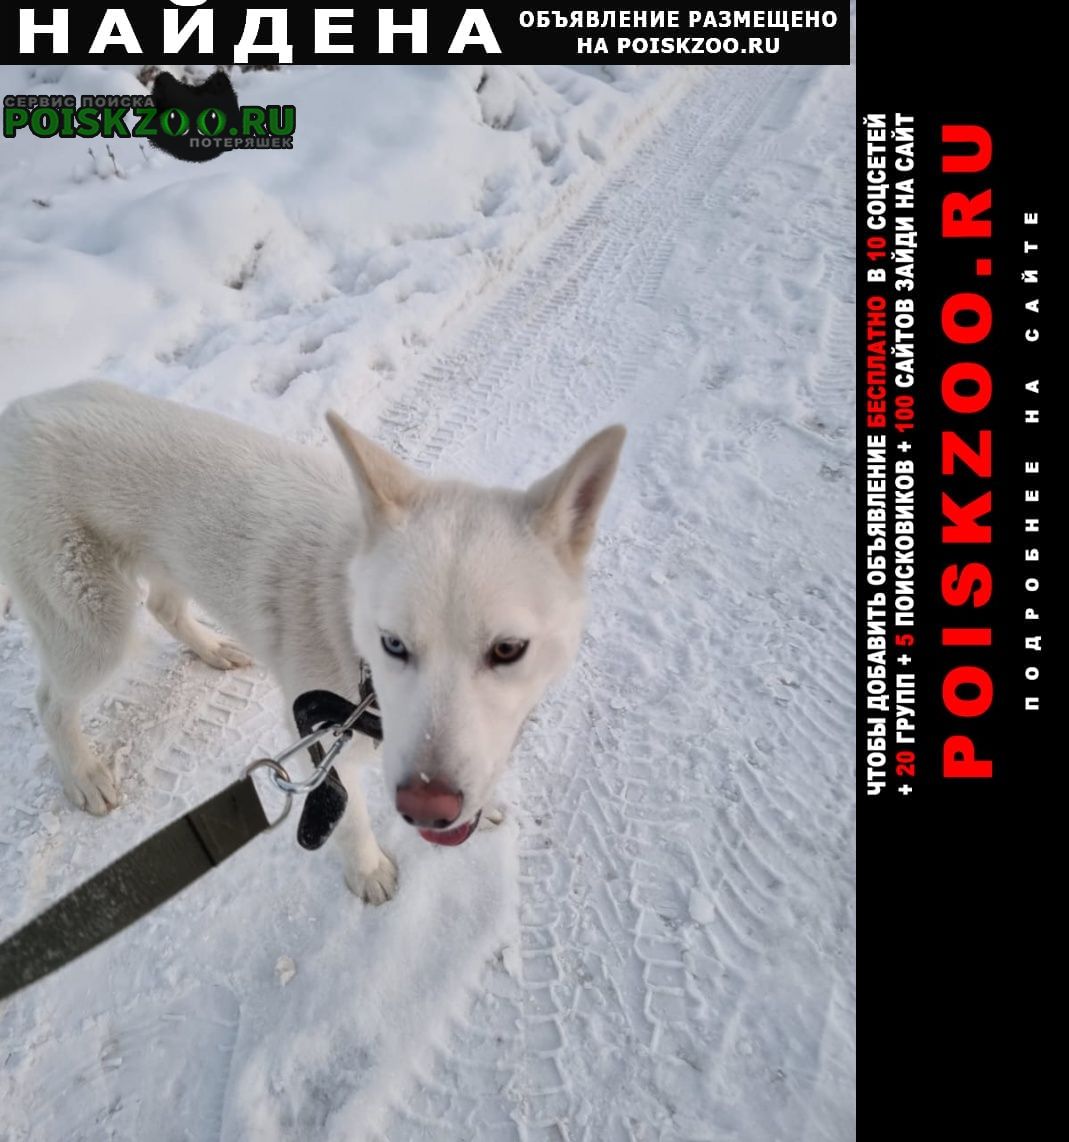 Найдена собака кобель г, центральный район Челябинск